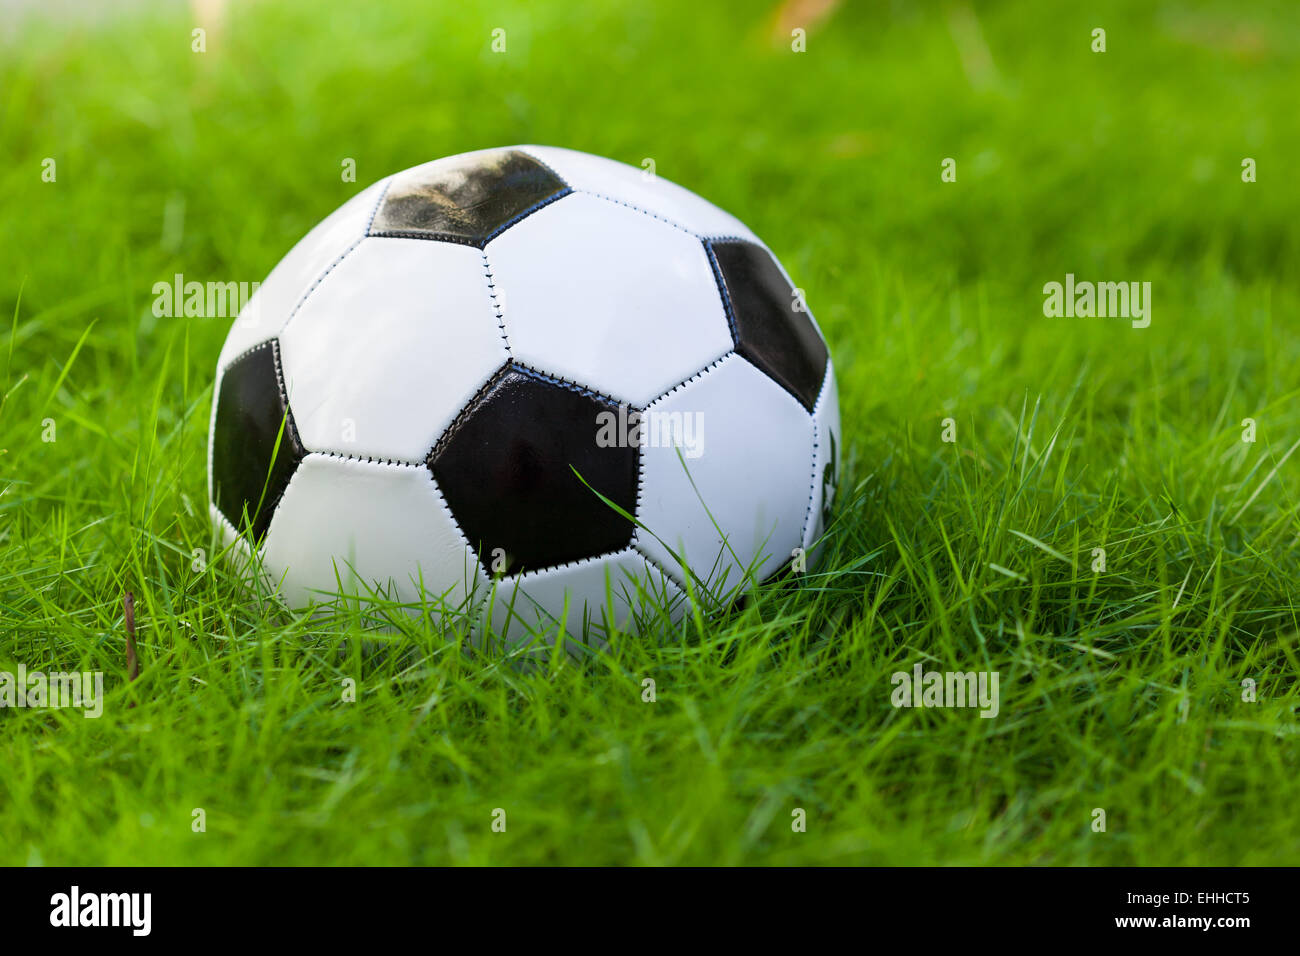 Ballon de soccer sur le terrain d'herbe verte libre Banque D'Images